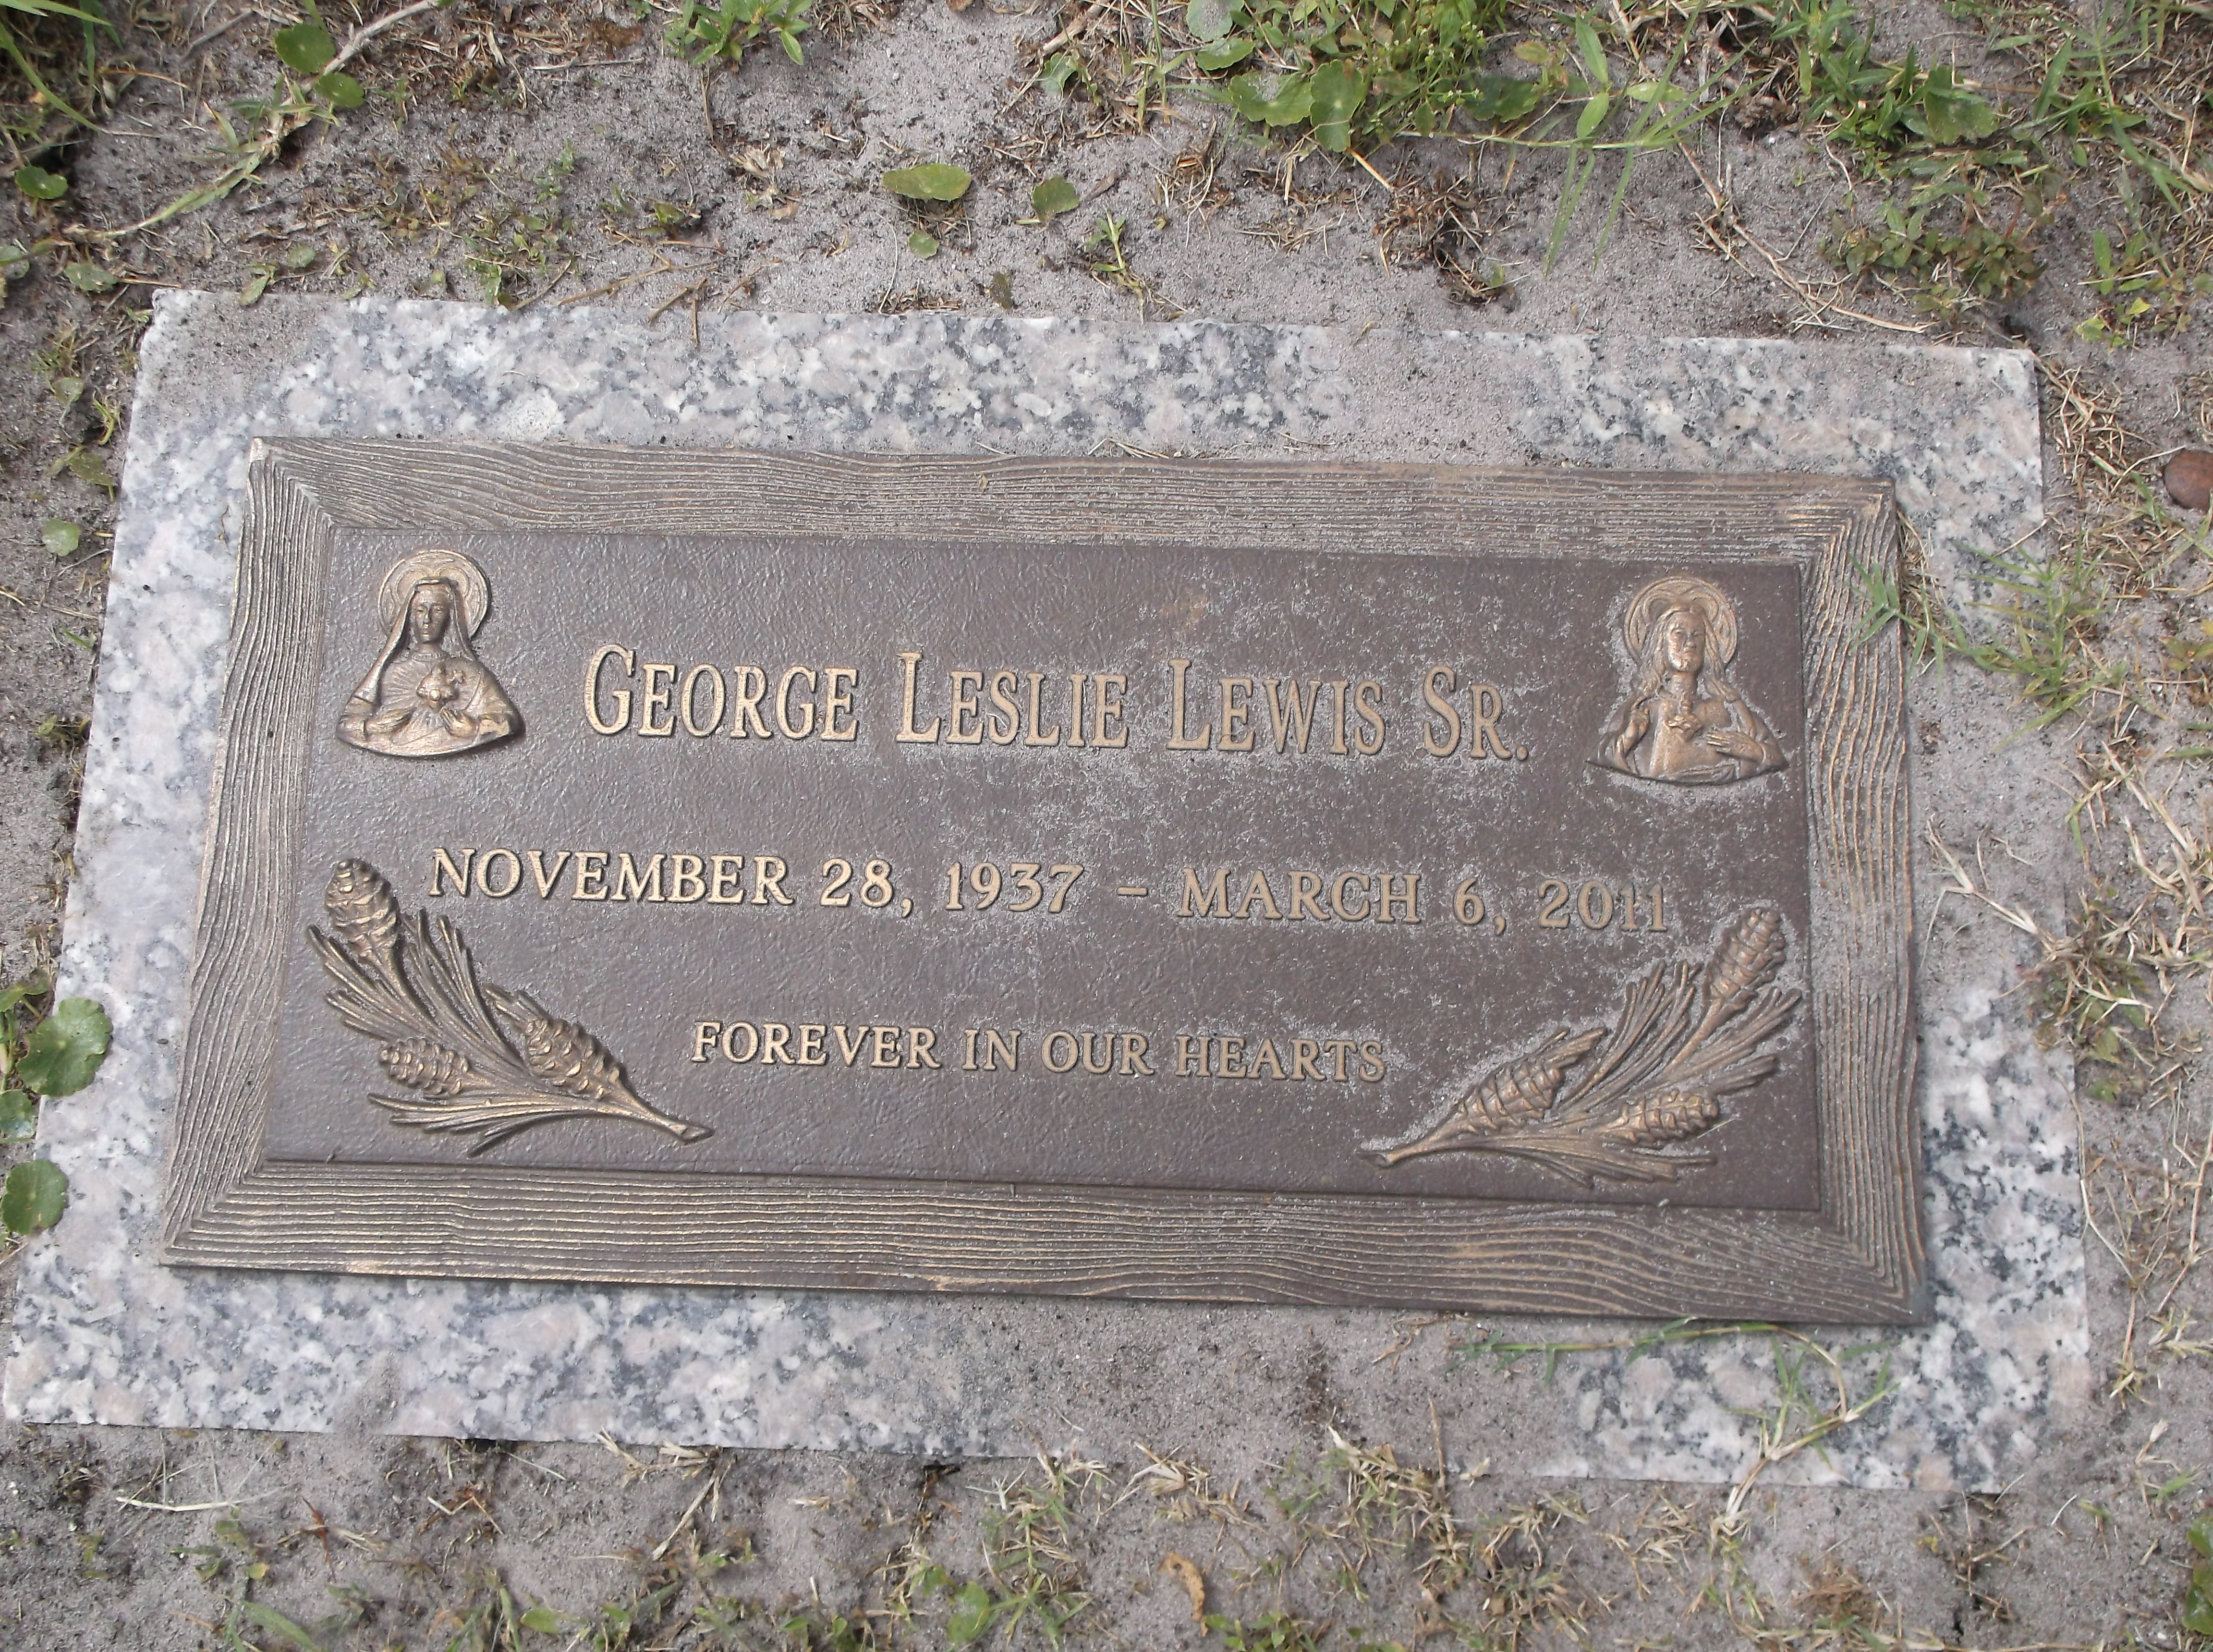 George Leslie Lewis, Sr